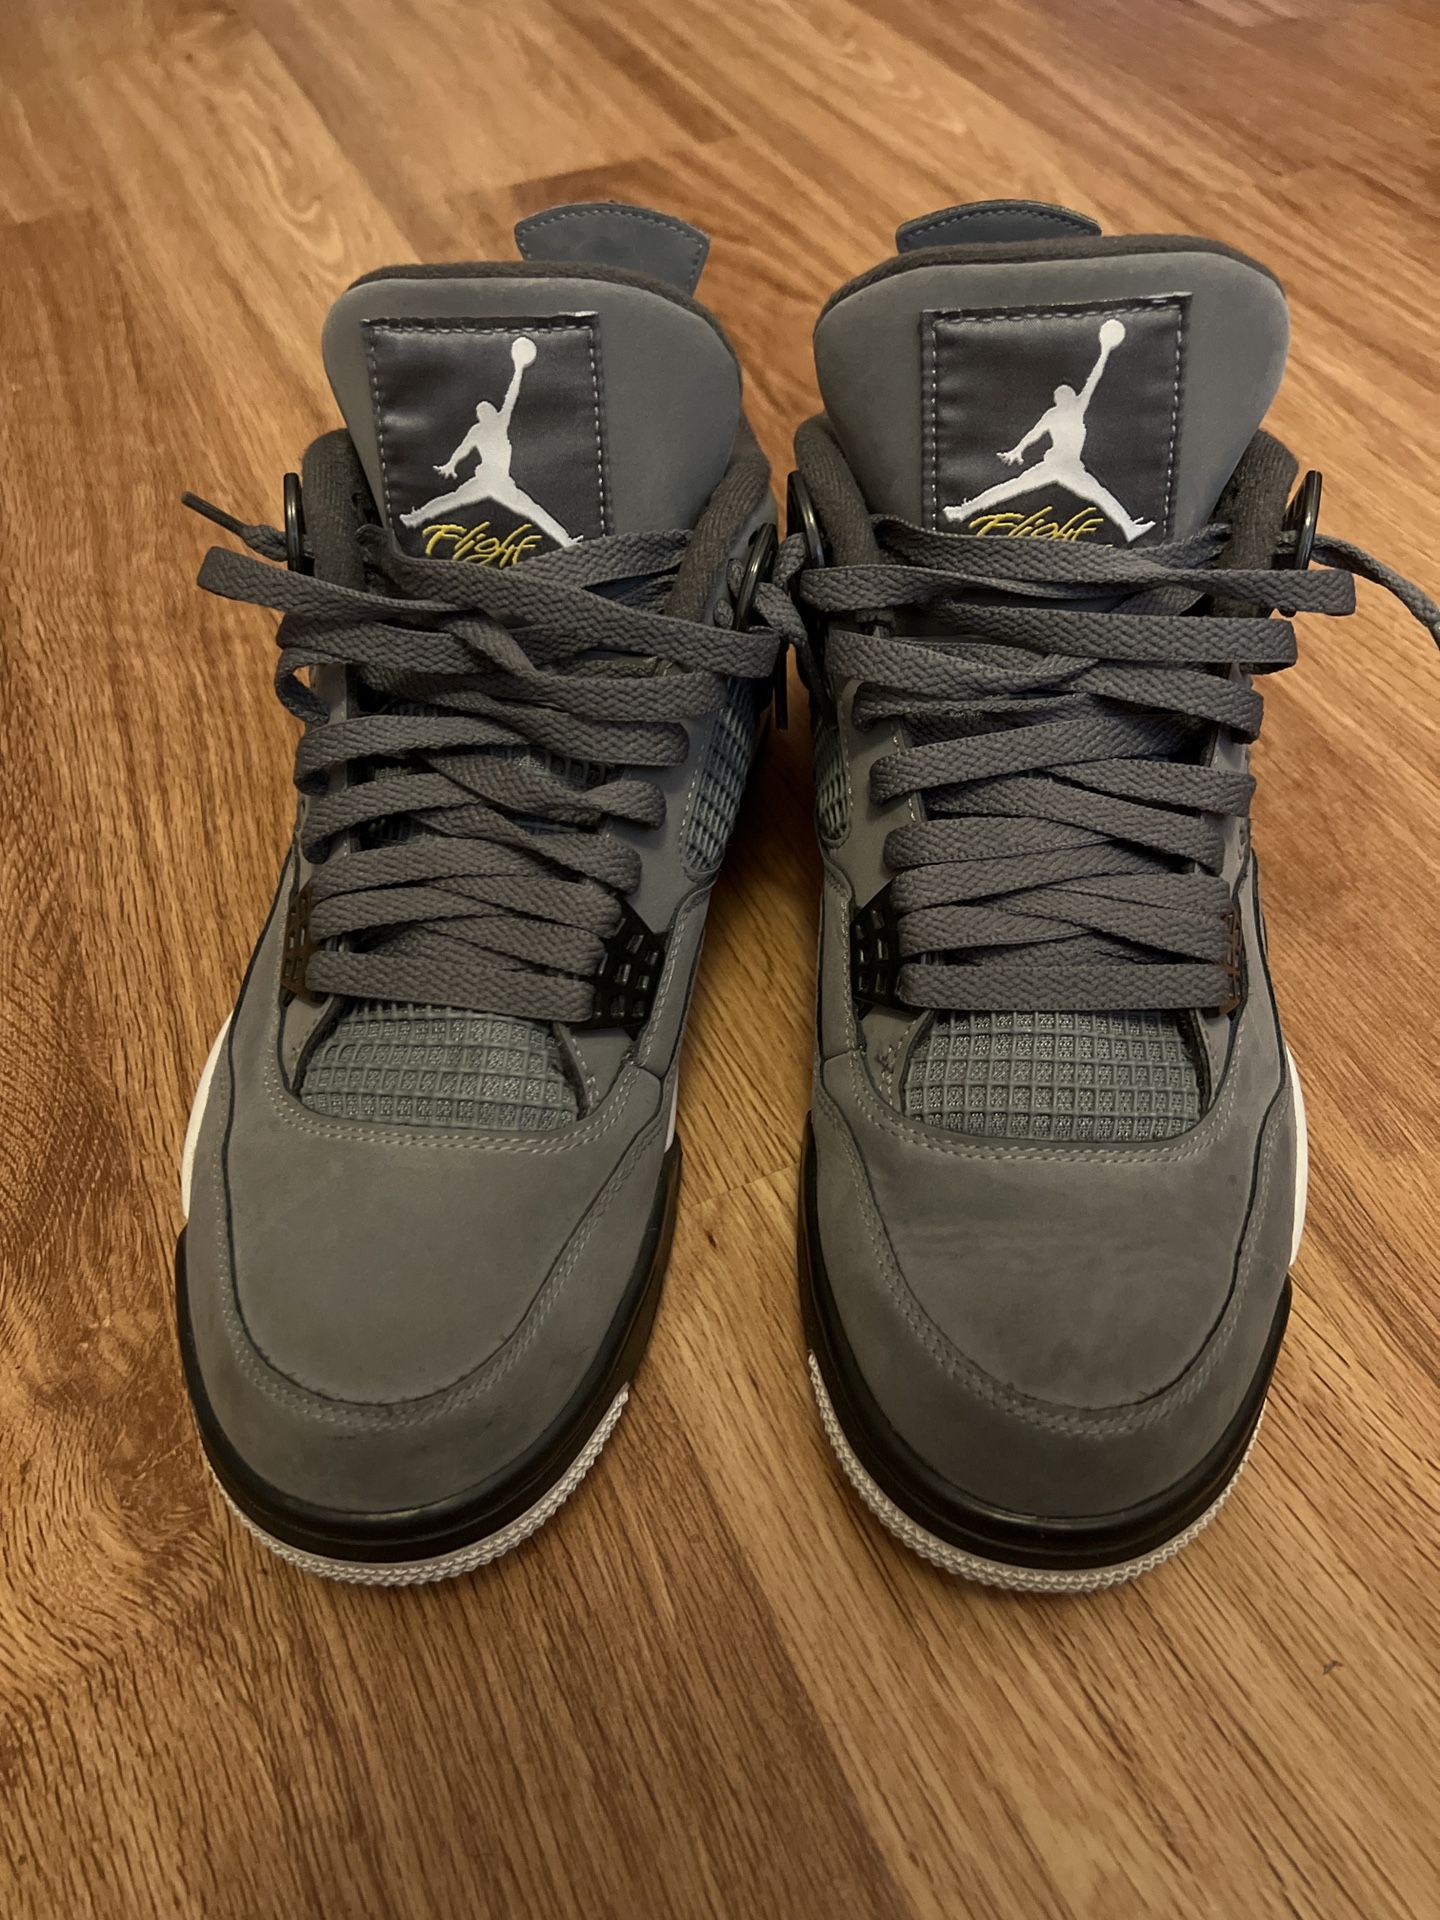 Jordan 4 Cool Grey